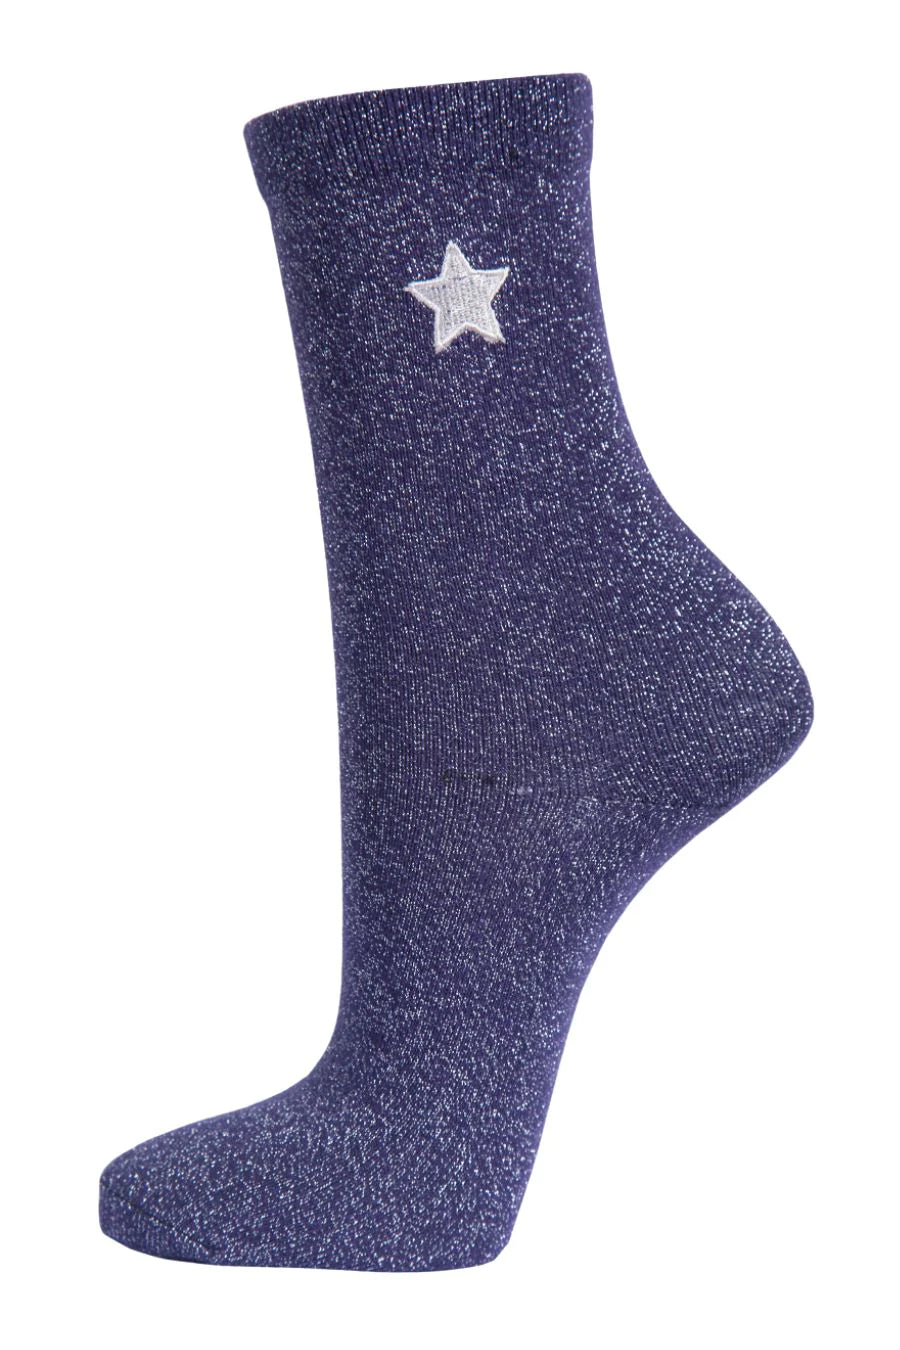 Navy Embroidered Star Glitter Socks